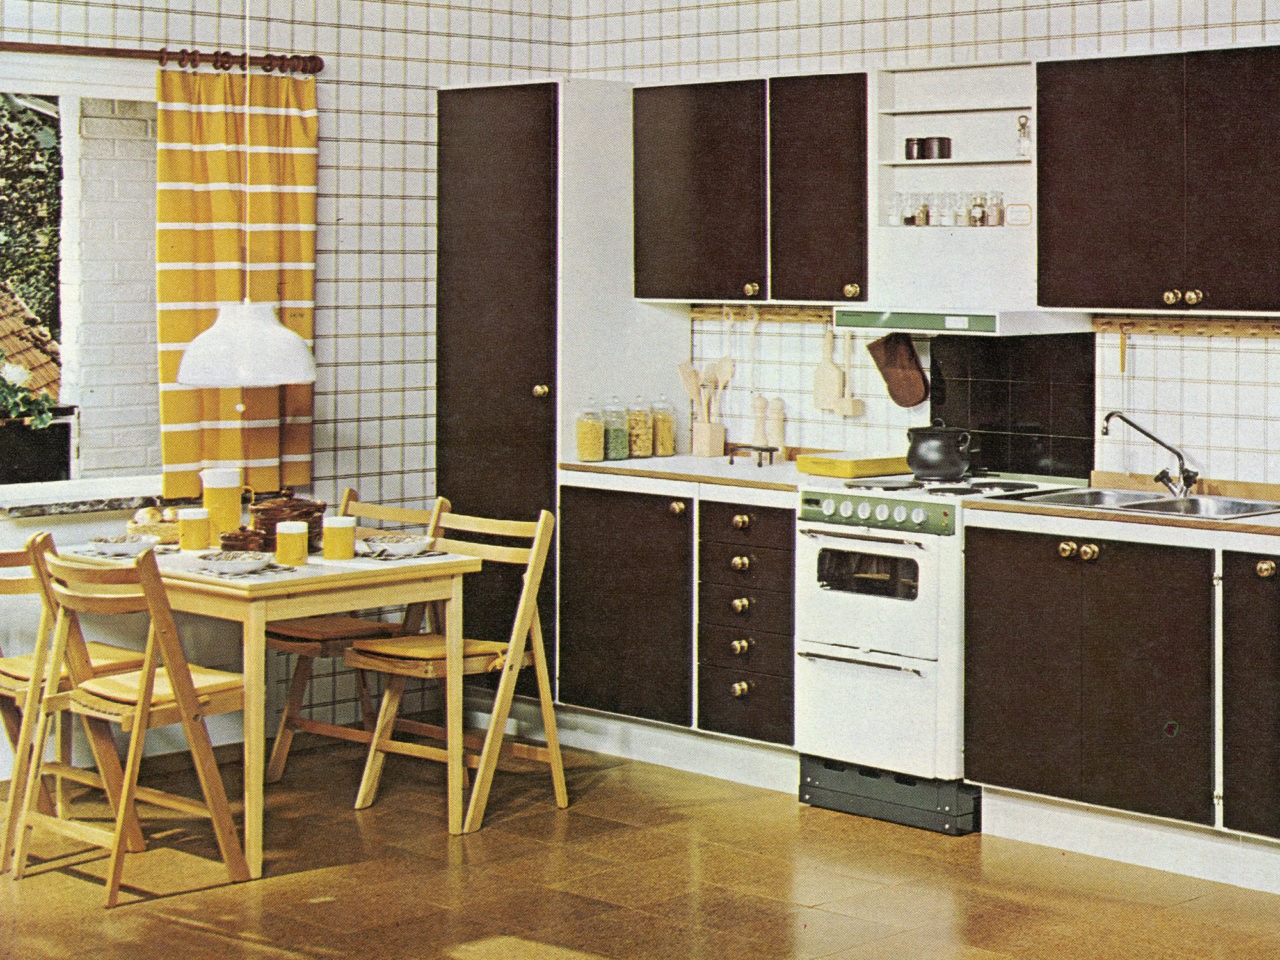 Cuisine sol façon liège, portes de placards marron, combiné cuisinière-lave-vaisselle, tapisserie à carreaux, table, chaises.